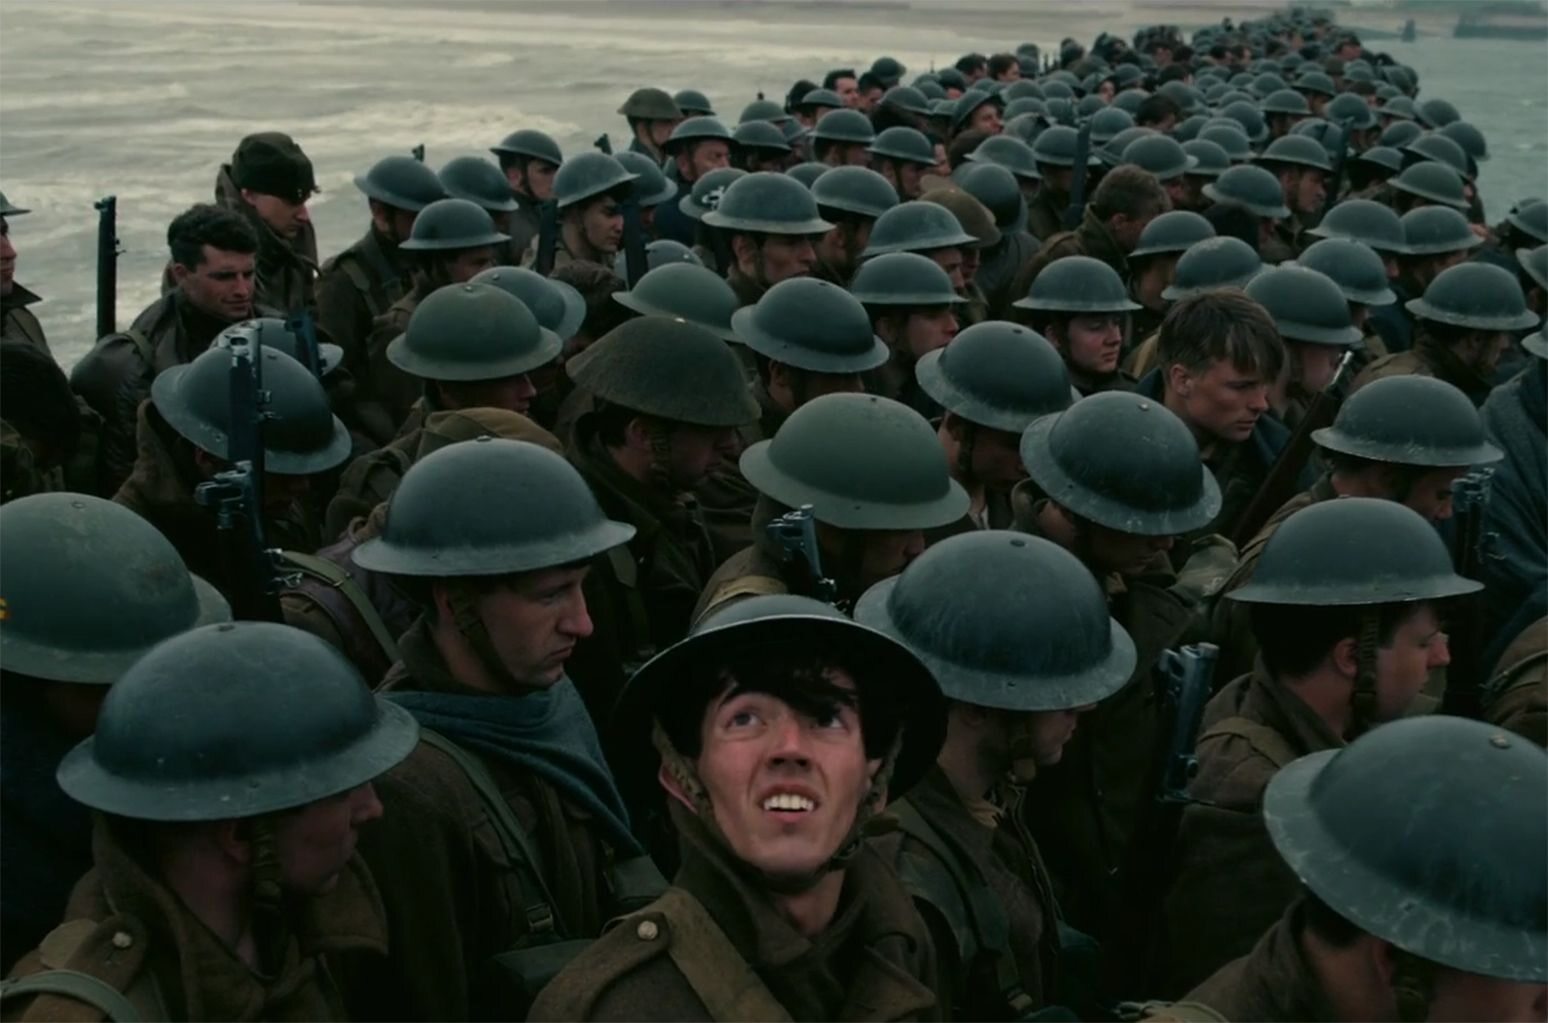 kadr z filmu "Dunkierka" (2017)